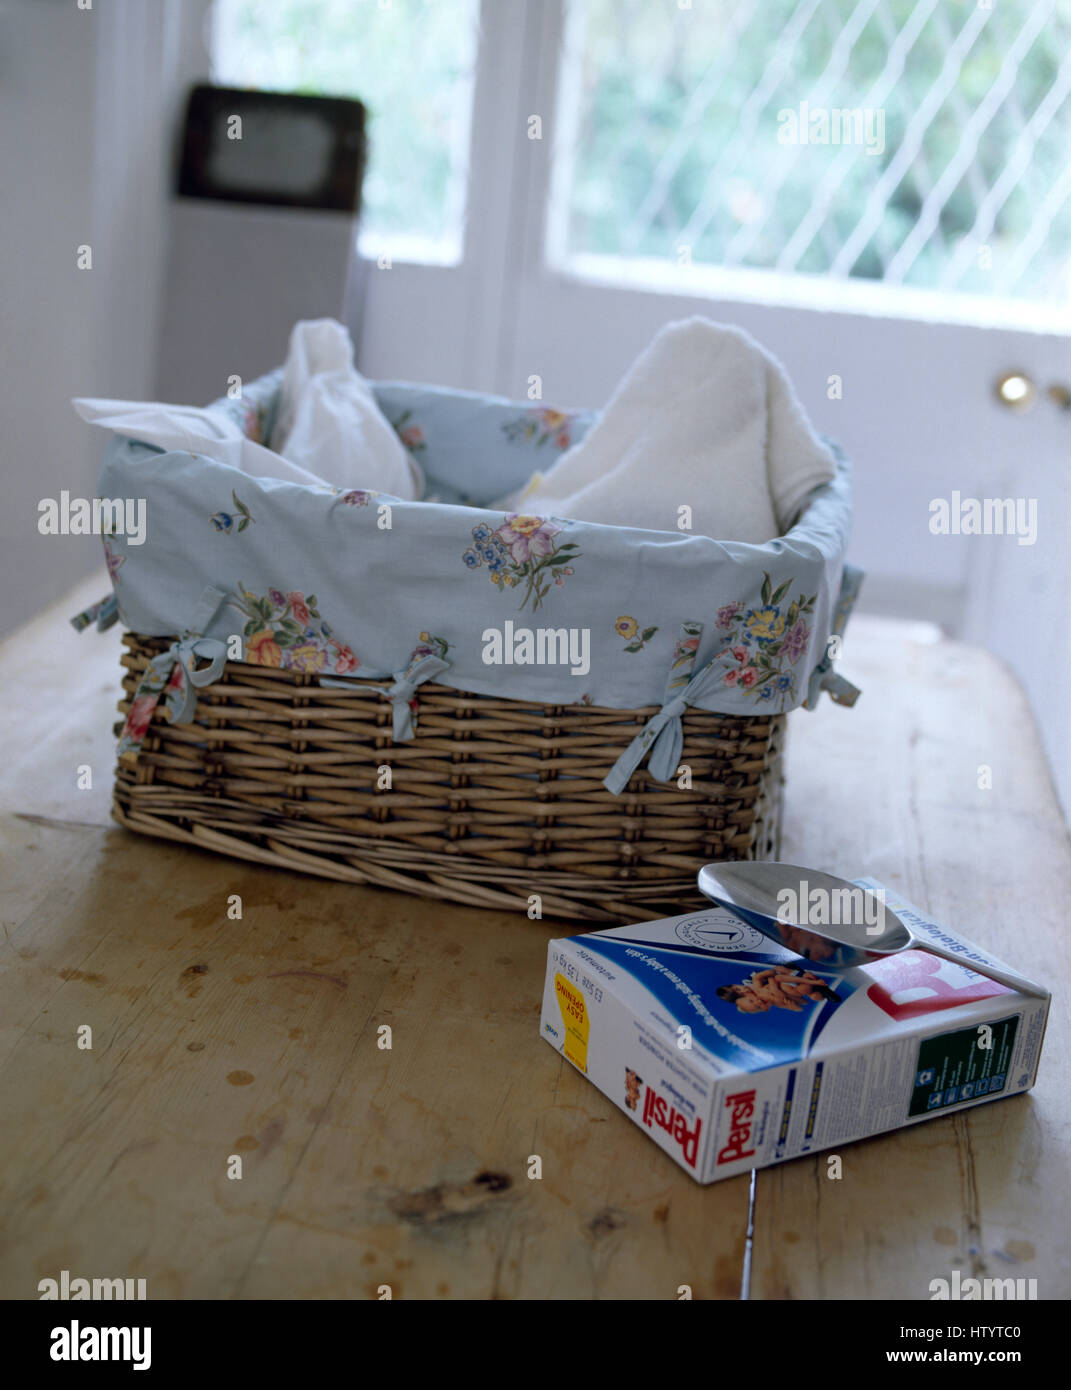 Pacchetto di lavaggio Persil polvere sul tavolo con motivi floreali foderato in cotone un cesto della biancheria Foto Stock